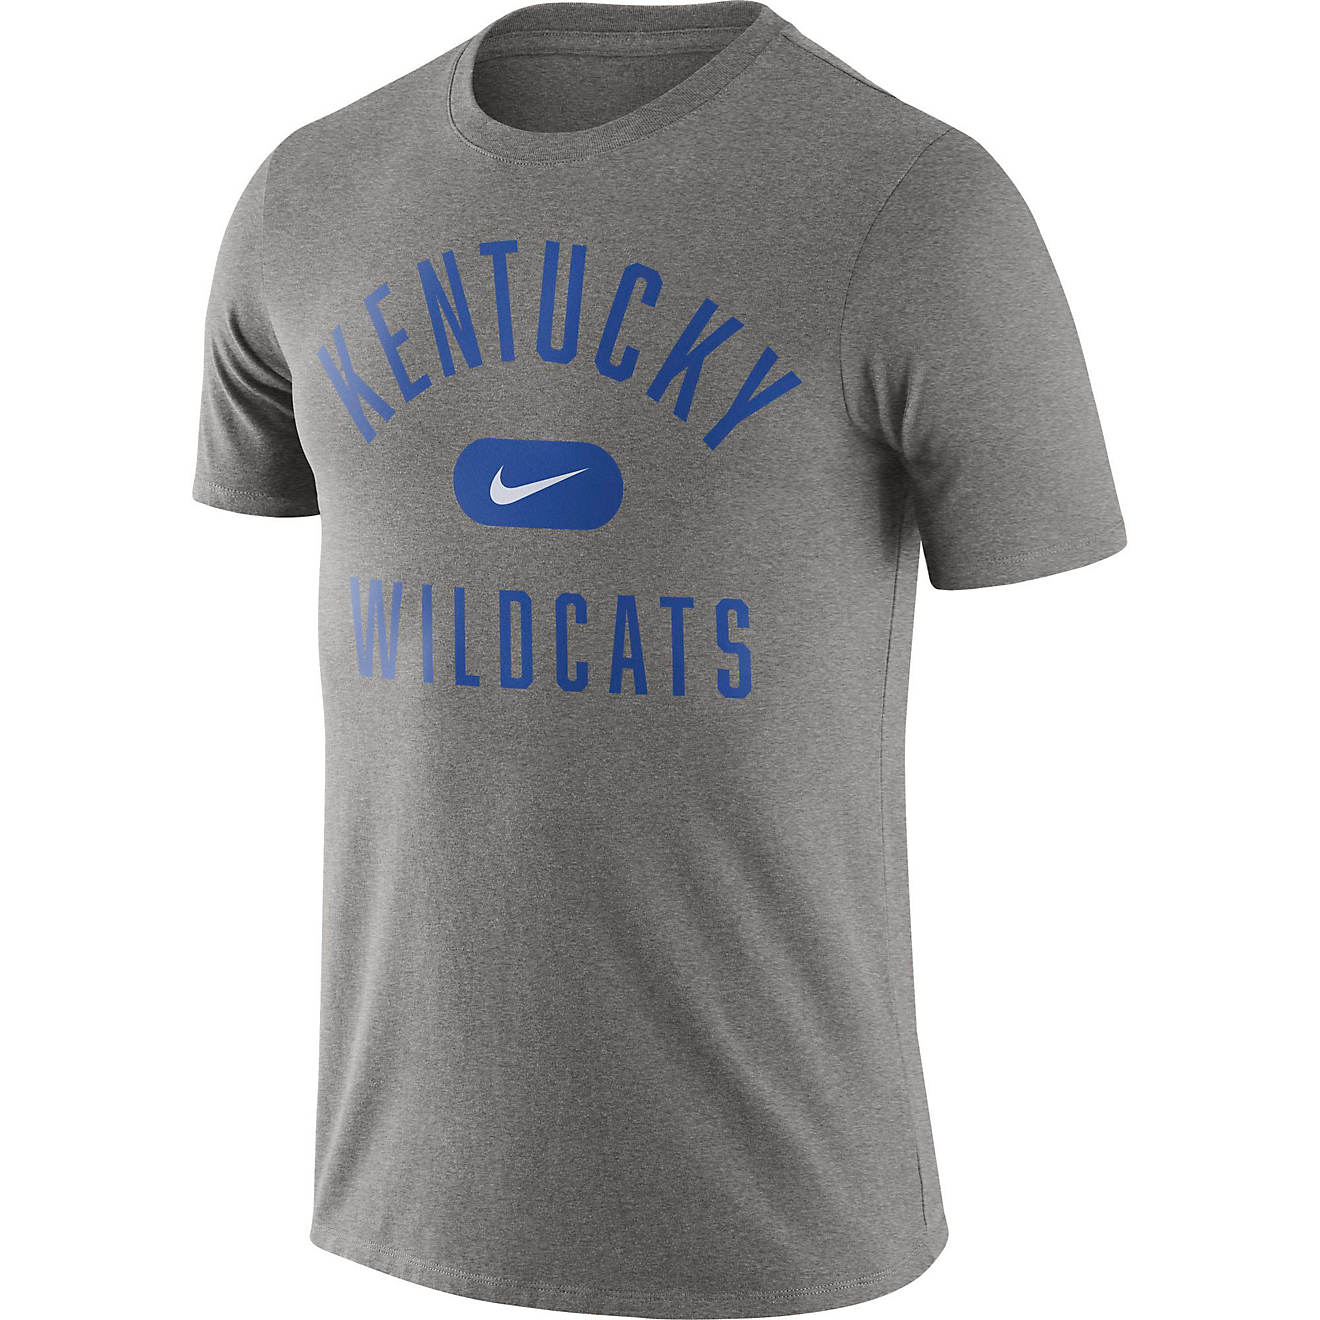 NCAA Champions University of Kentucky Wildcats UK Basketball Kentucky Arch T-Shirt Short Sleeve Black 